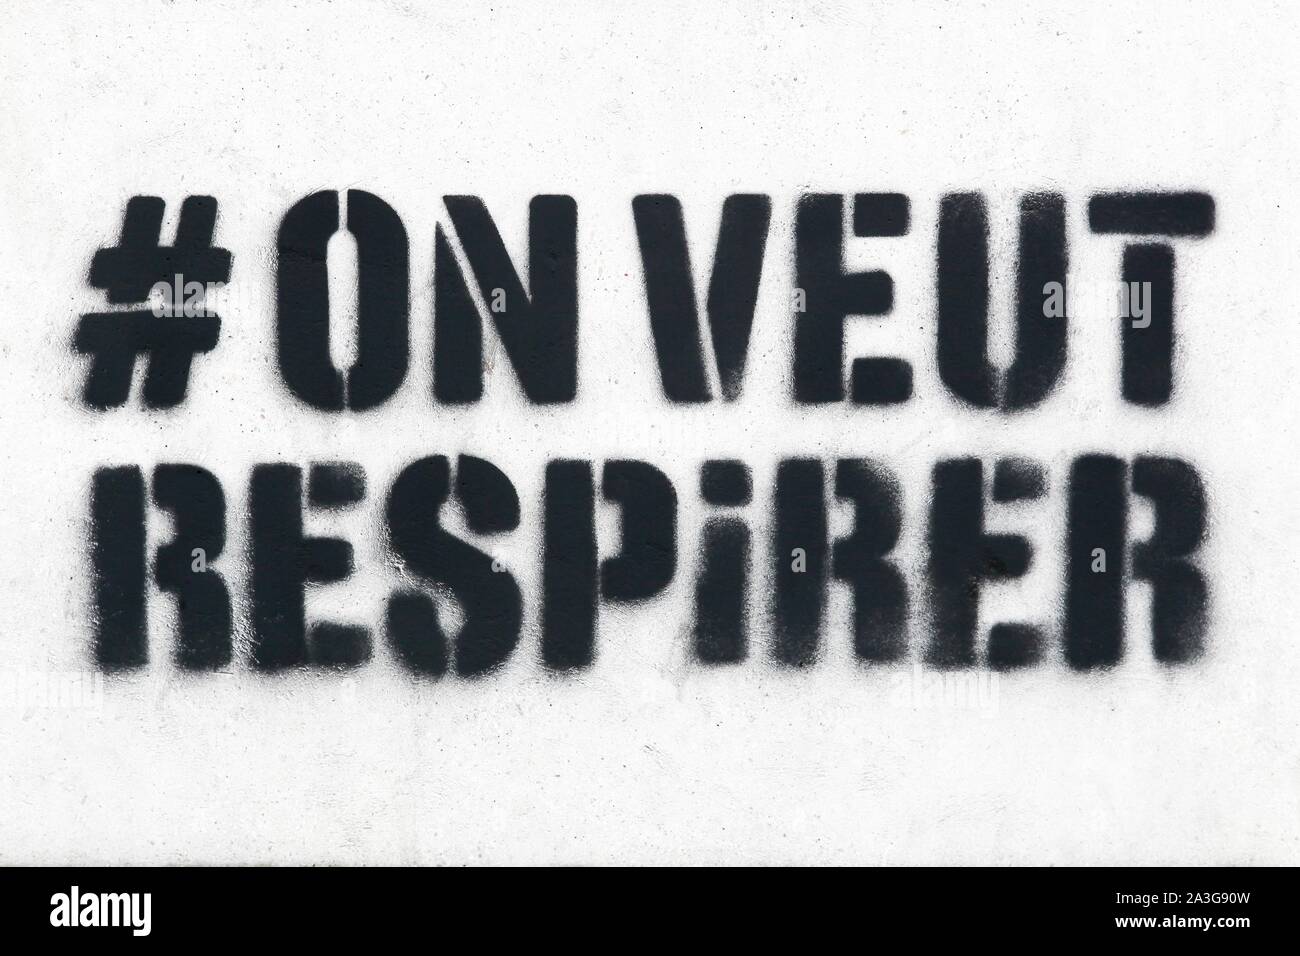 Hashtag nous voulons respirer en langue française Banque D'Images